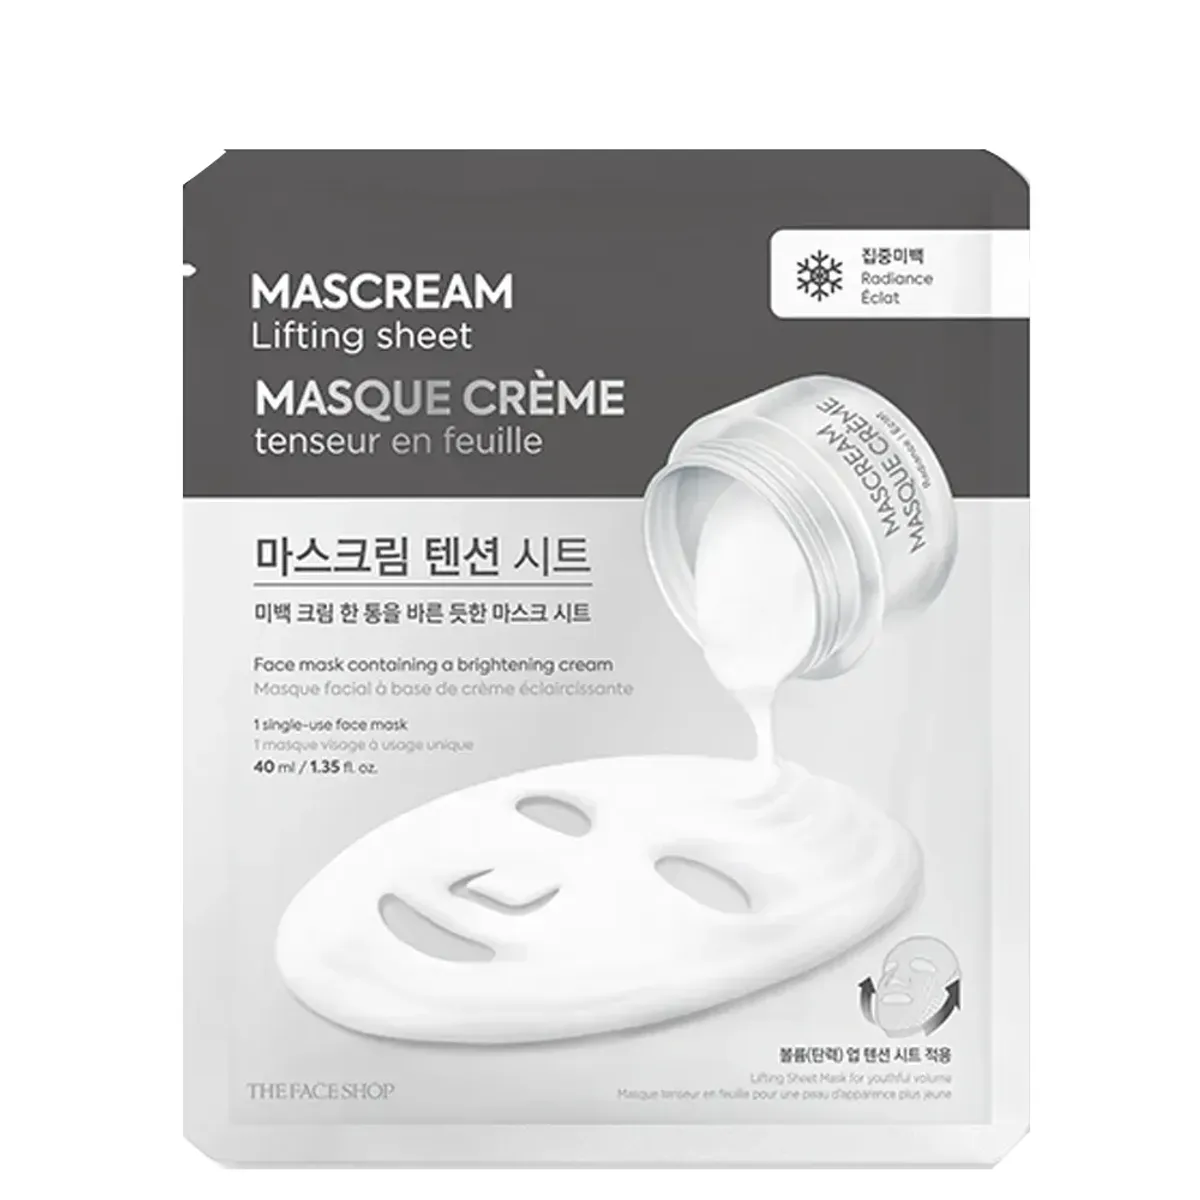 mat-na-lam-sang-da-deeply-brightening-mascream-lifting-sheet-mask-1